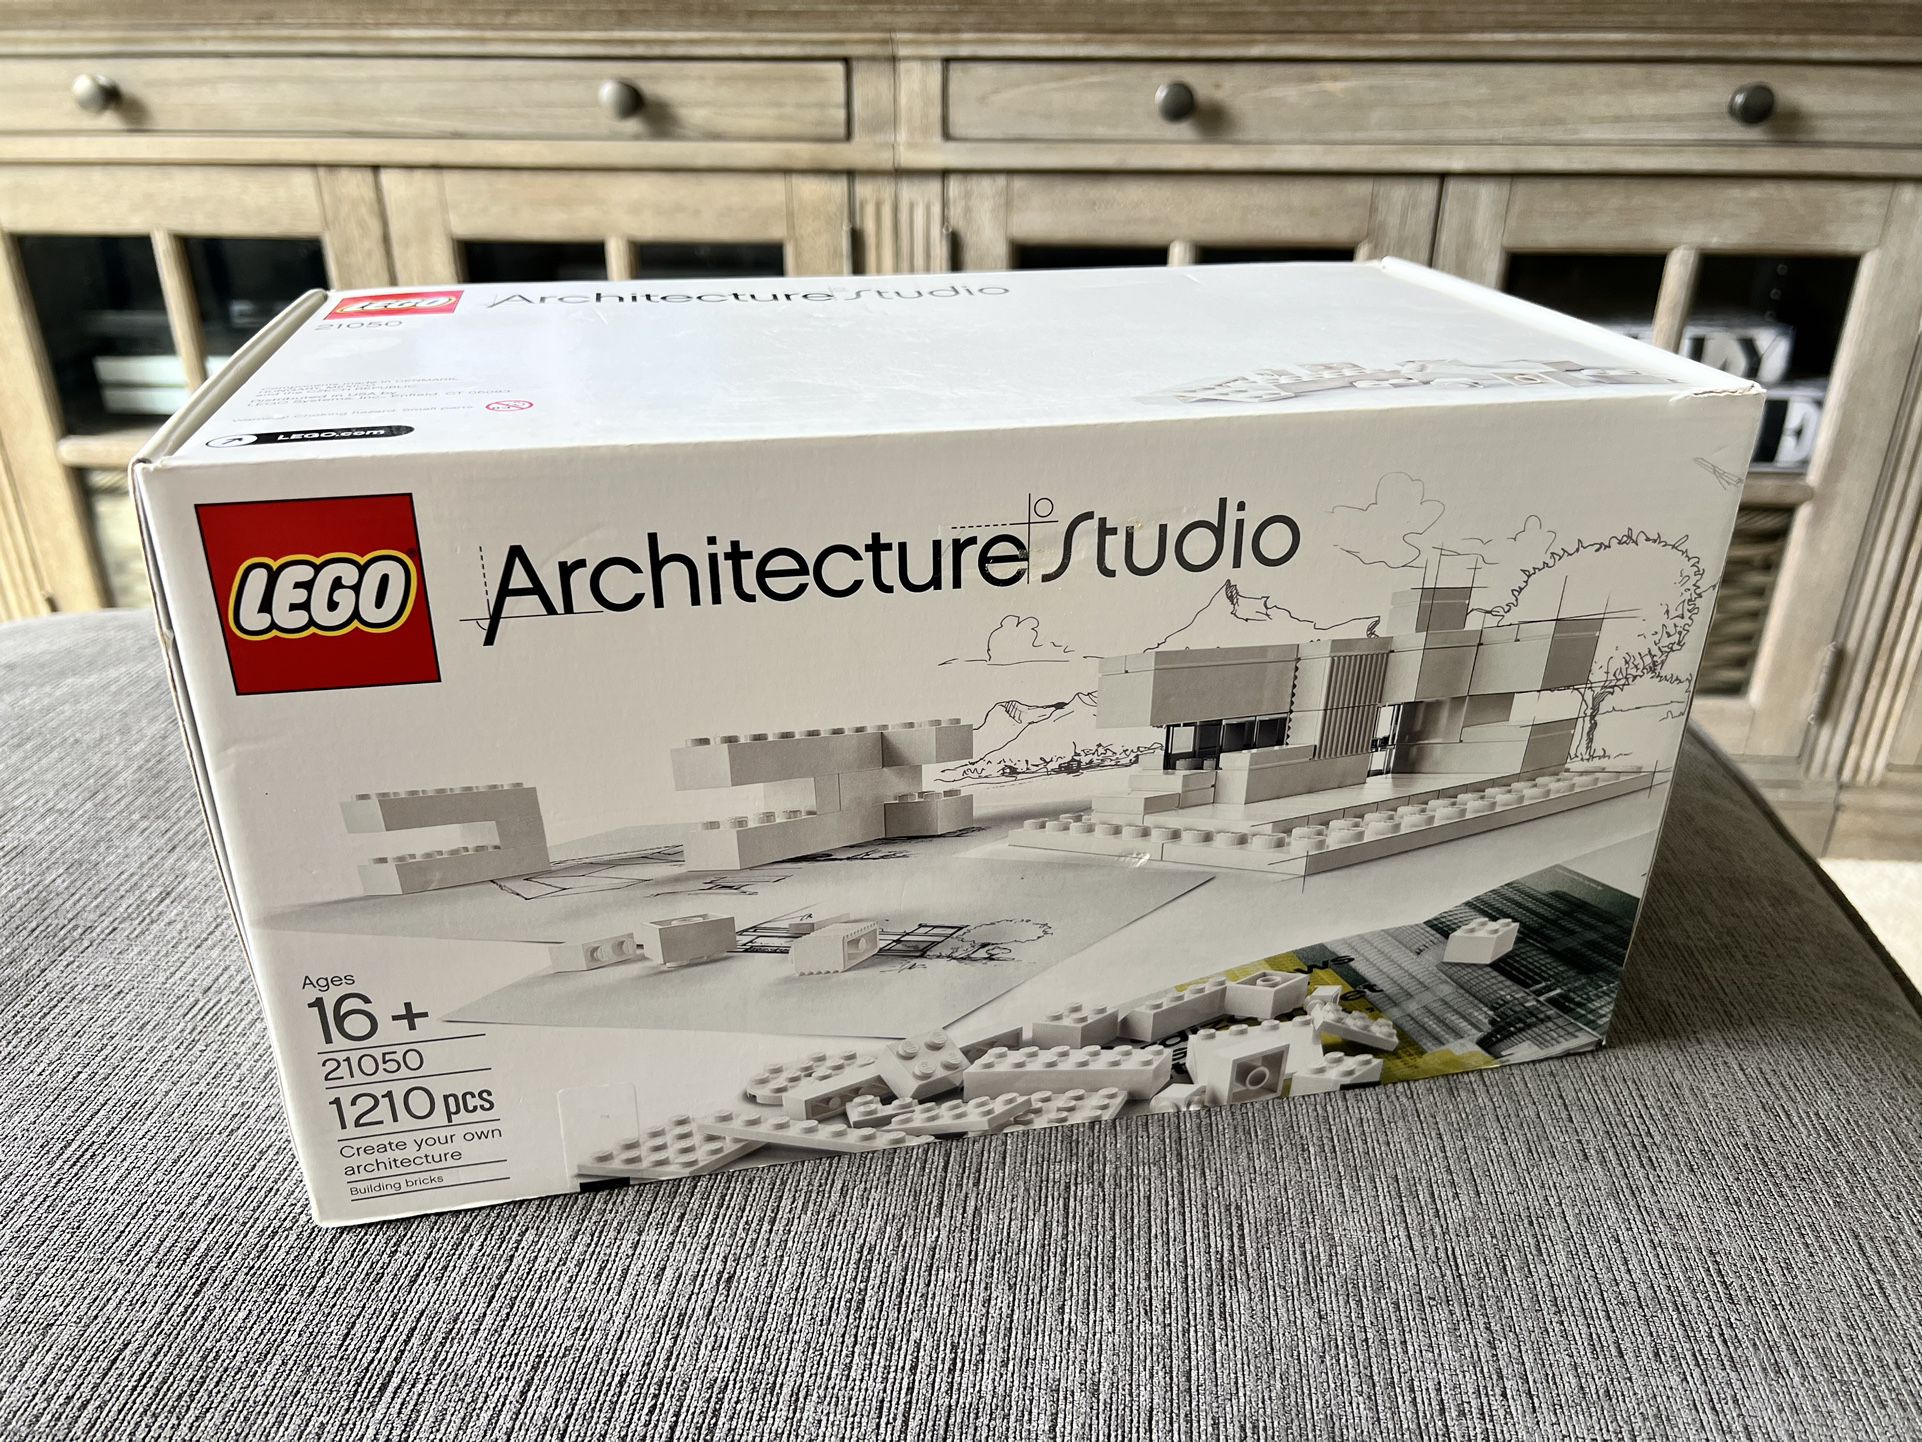 Selvforkælelse Knop køleskab Lego Architecture Studio Set for Sale in Marysville, WA - OfferUp